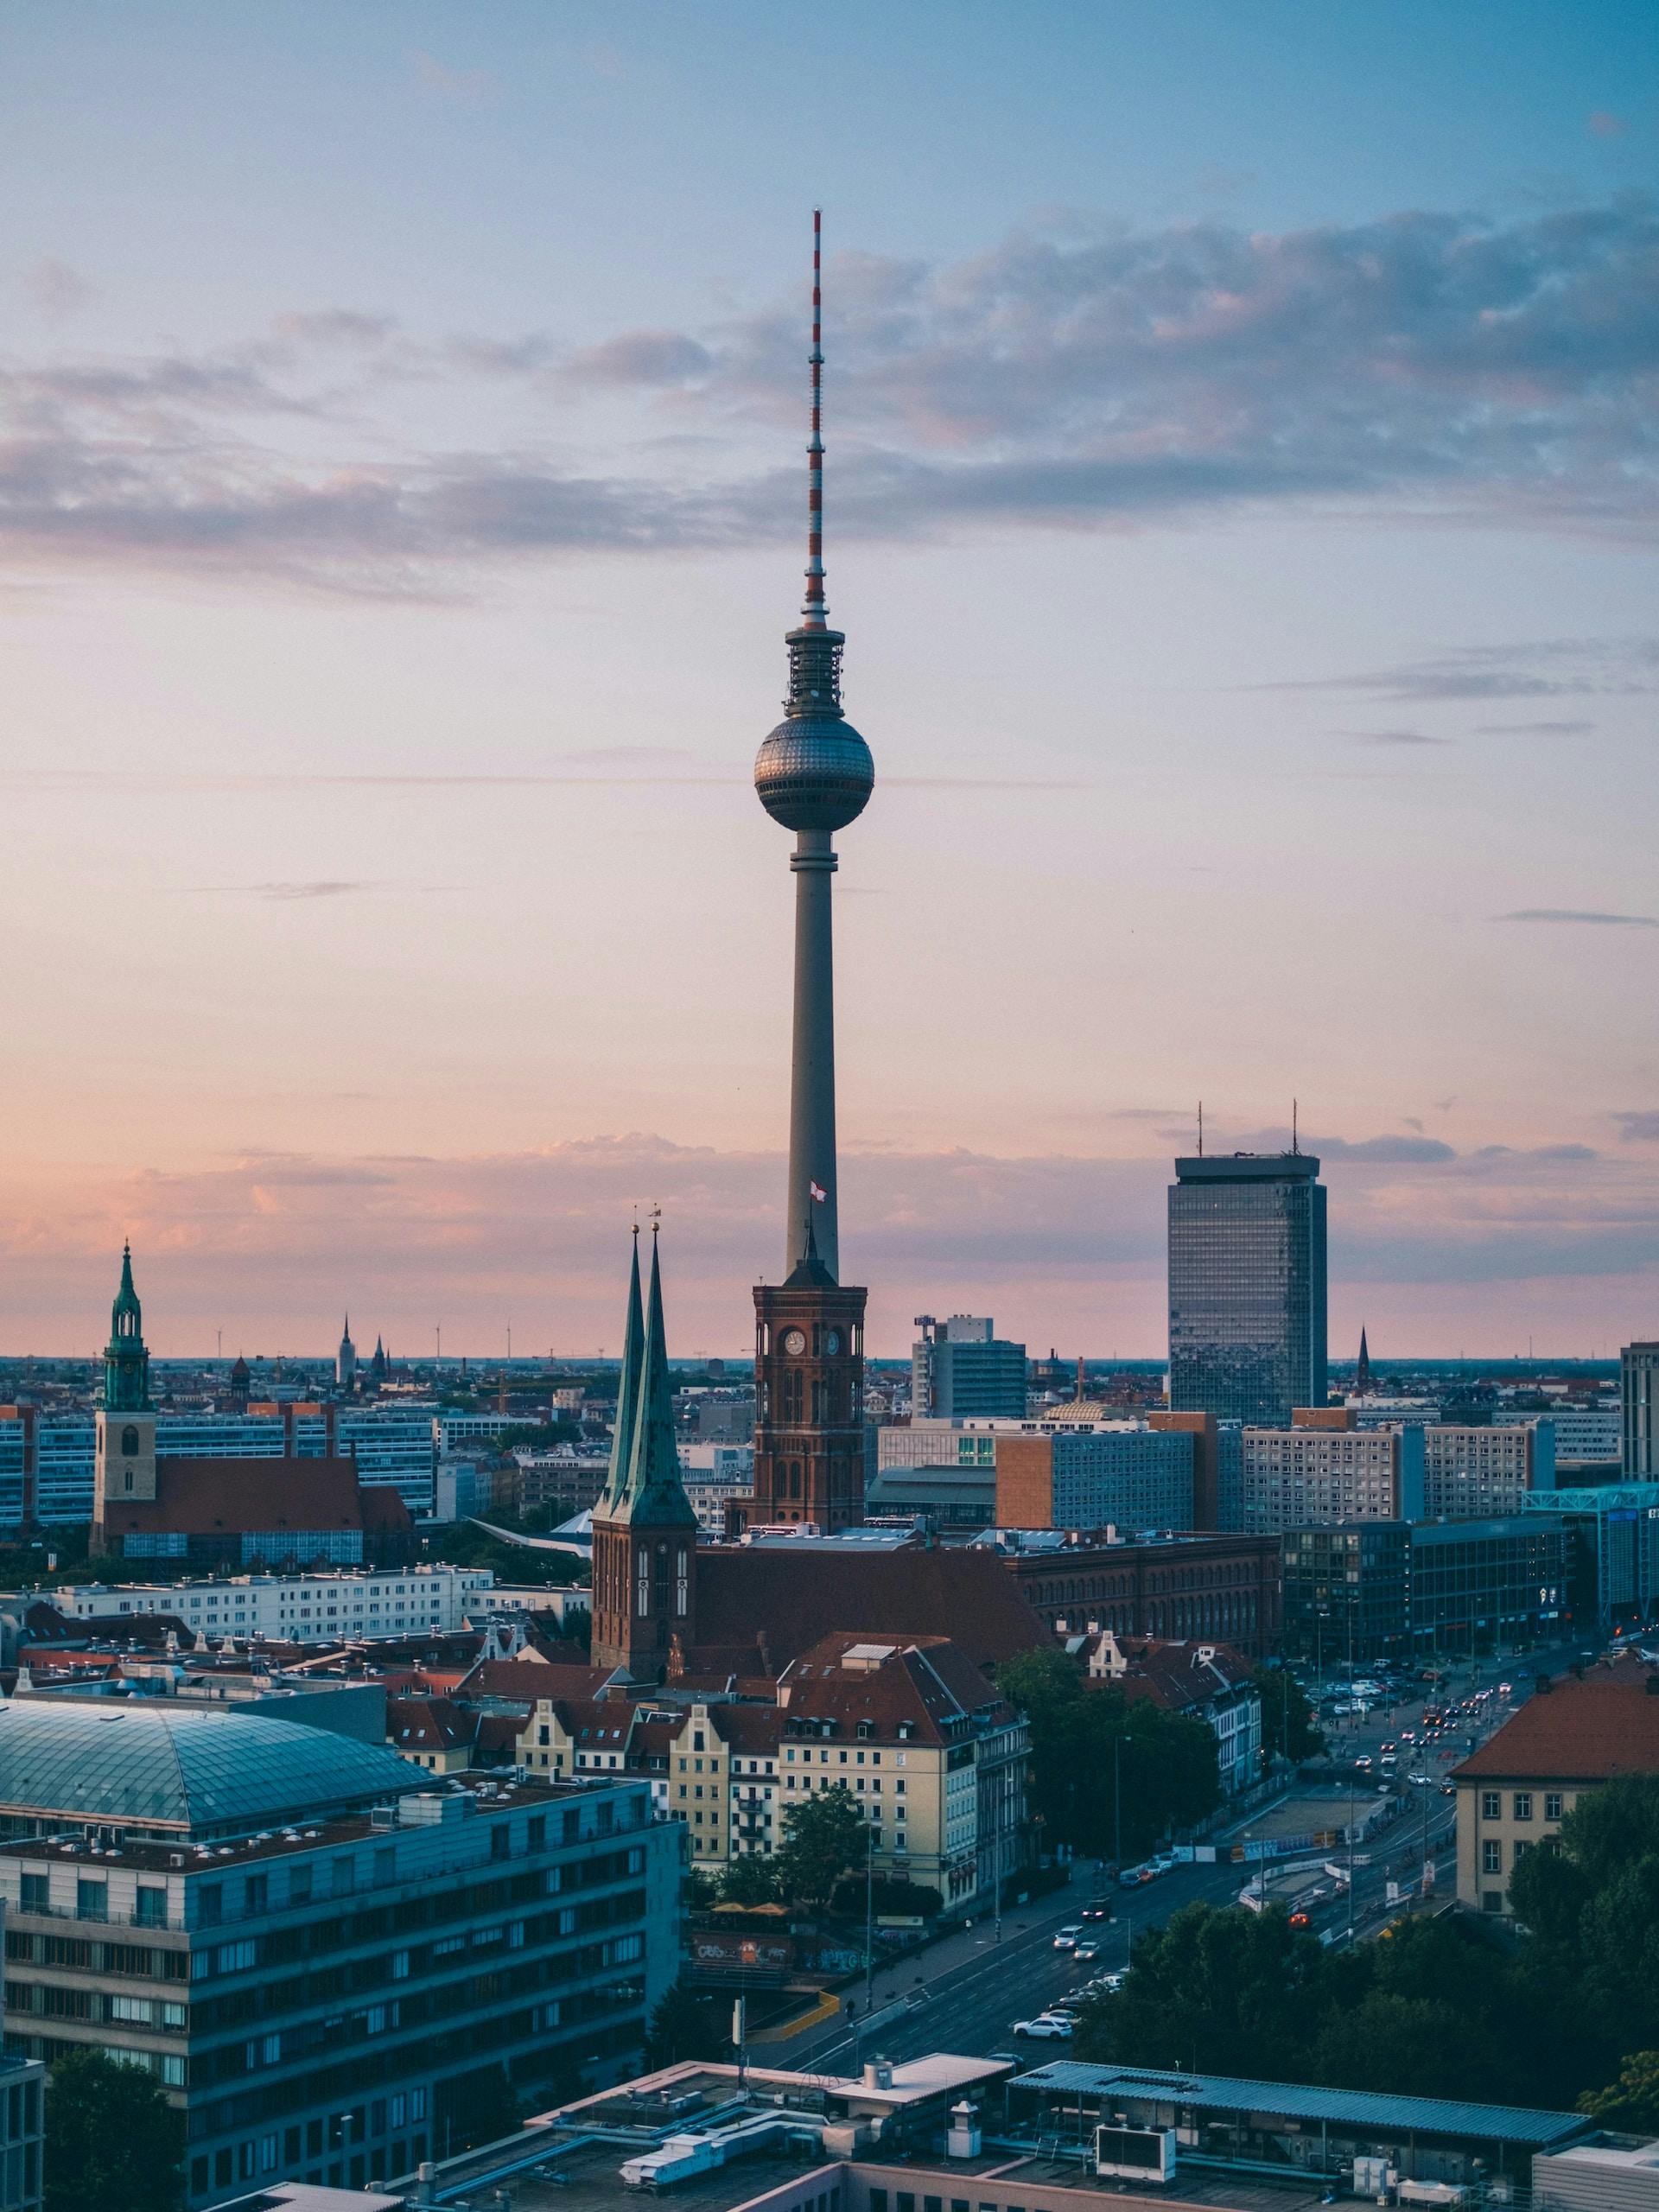 Die Skyline von Berlin mit dem Fernsehturm ist abgebildet 